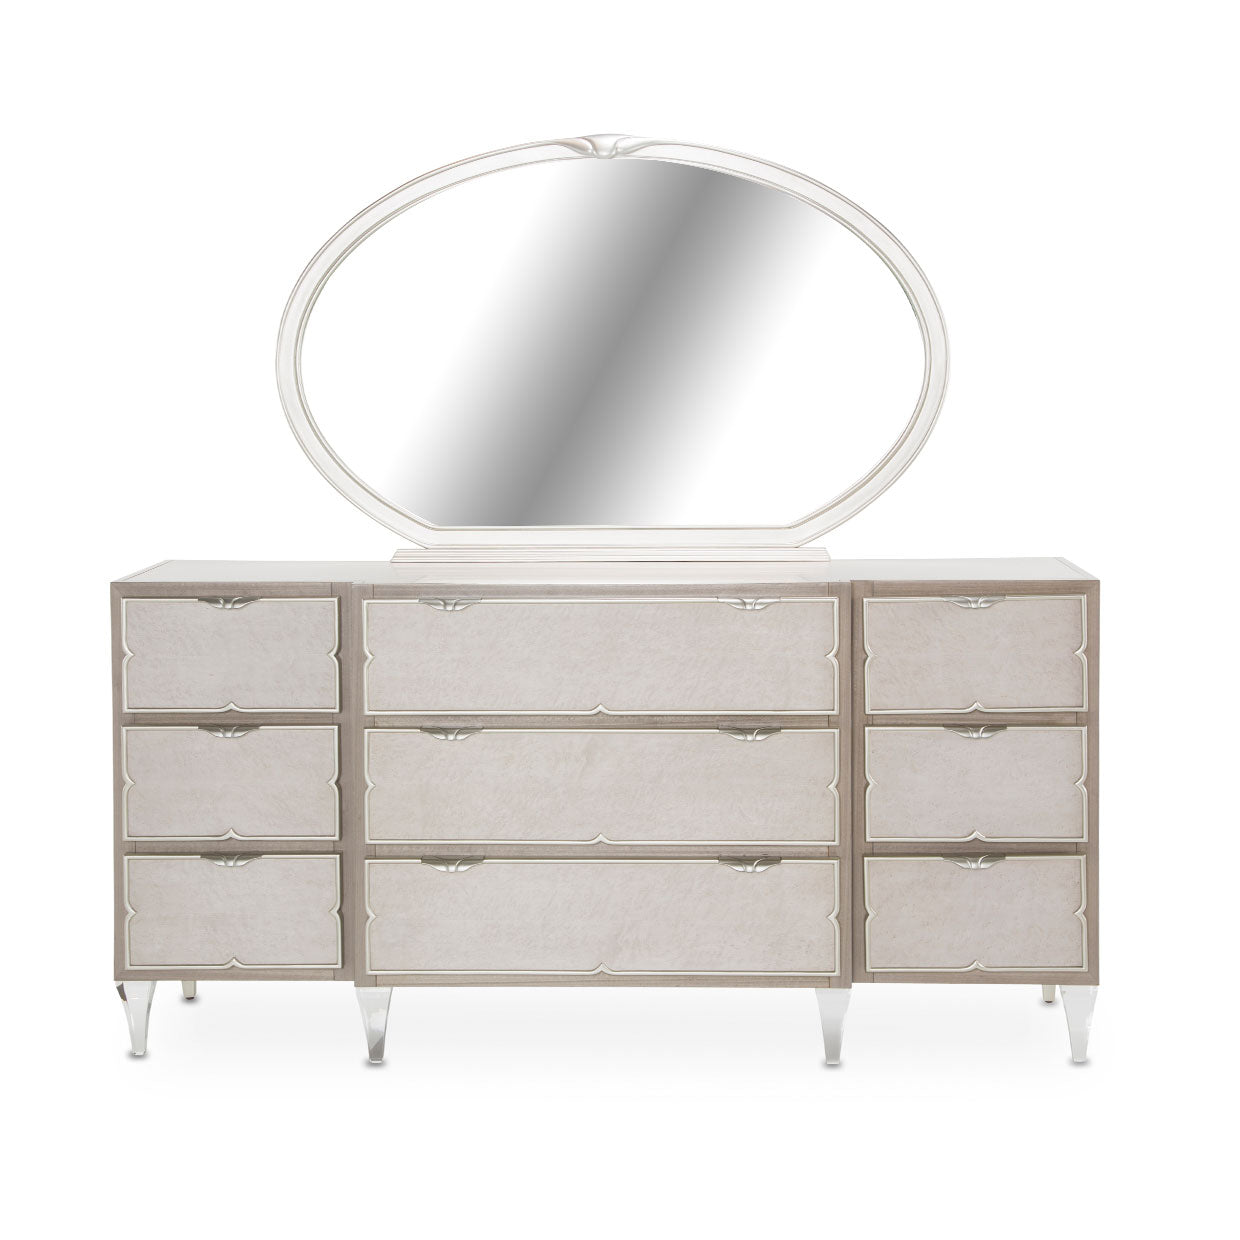 CAMDEN COURT Storage Console- Dresser & Oval Mirror - Dream art Gallery